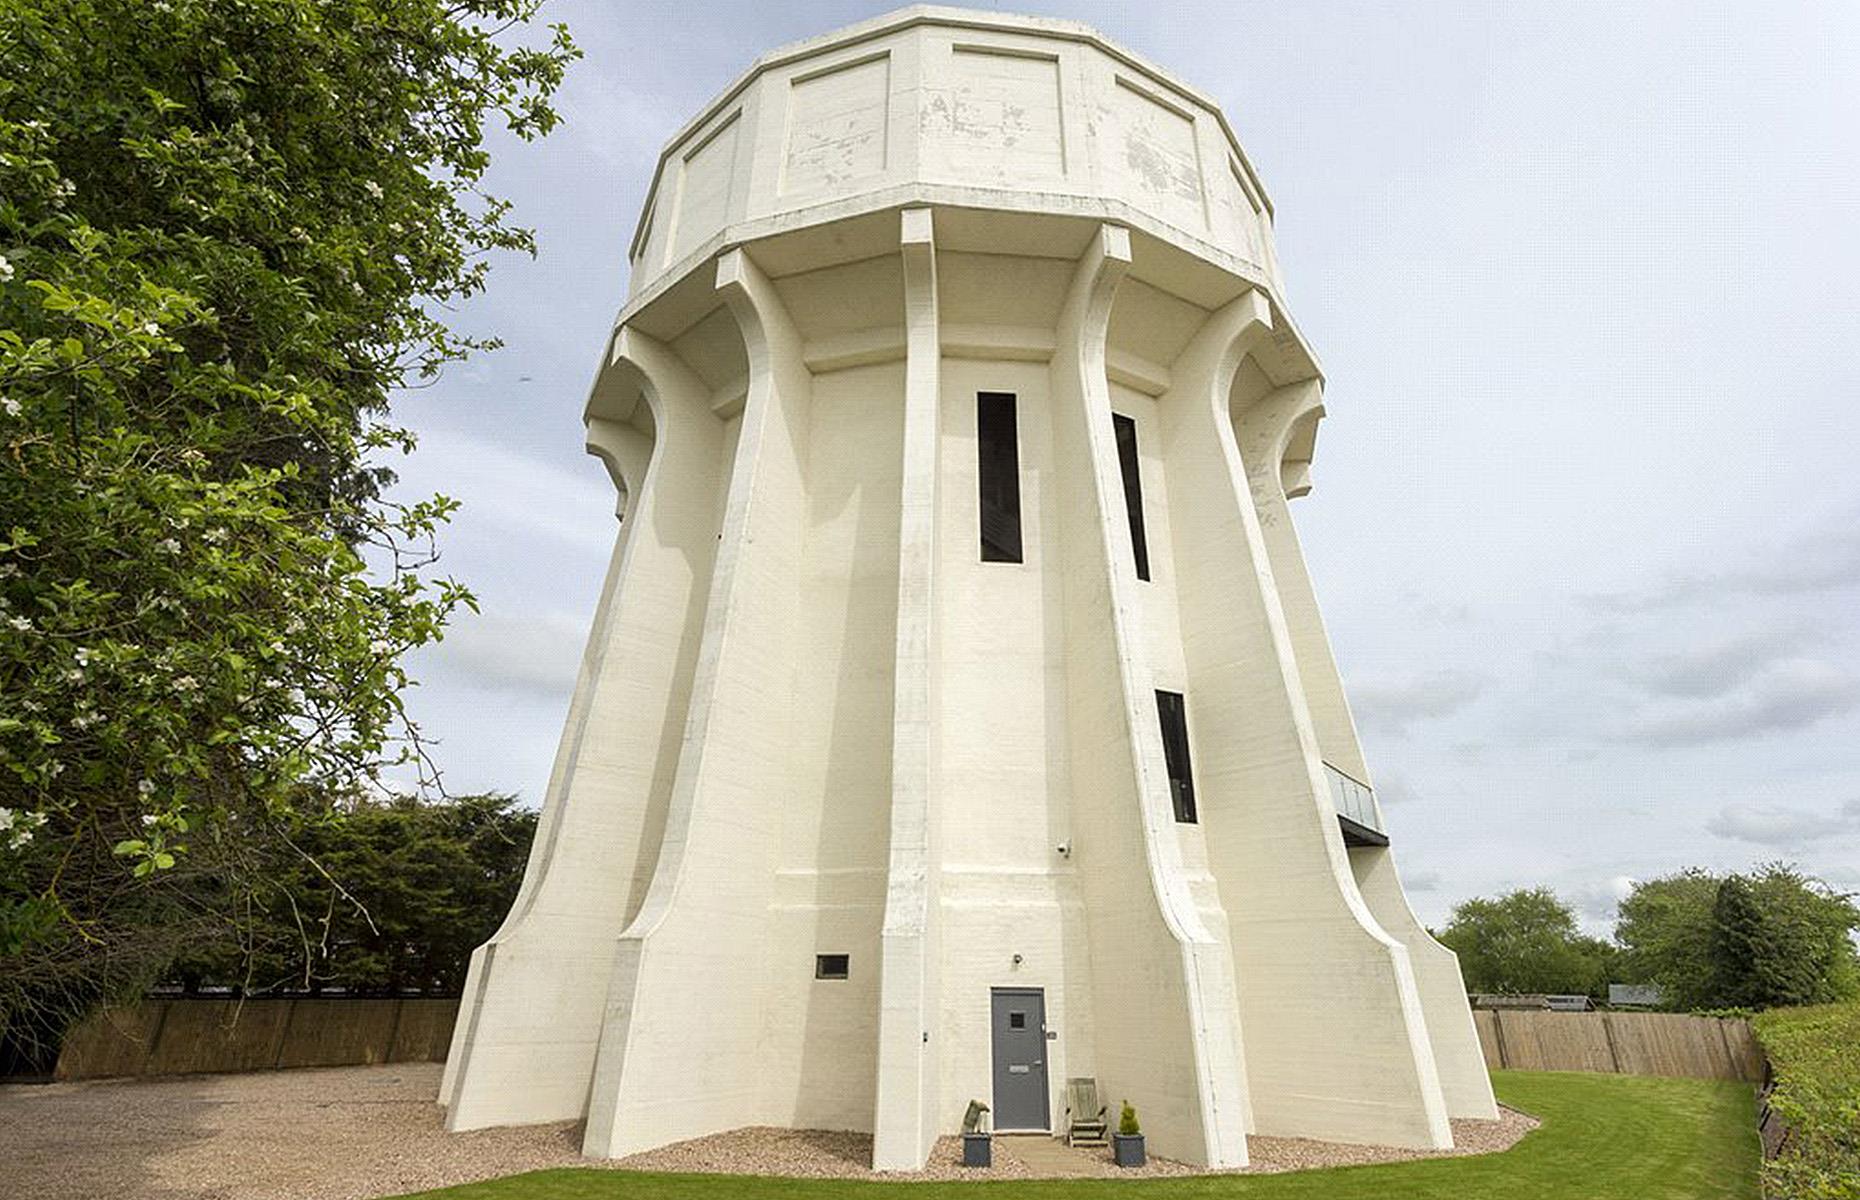 Water tower, Warwickshire, UK